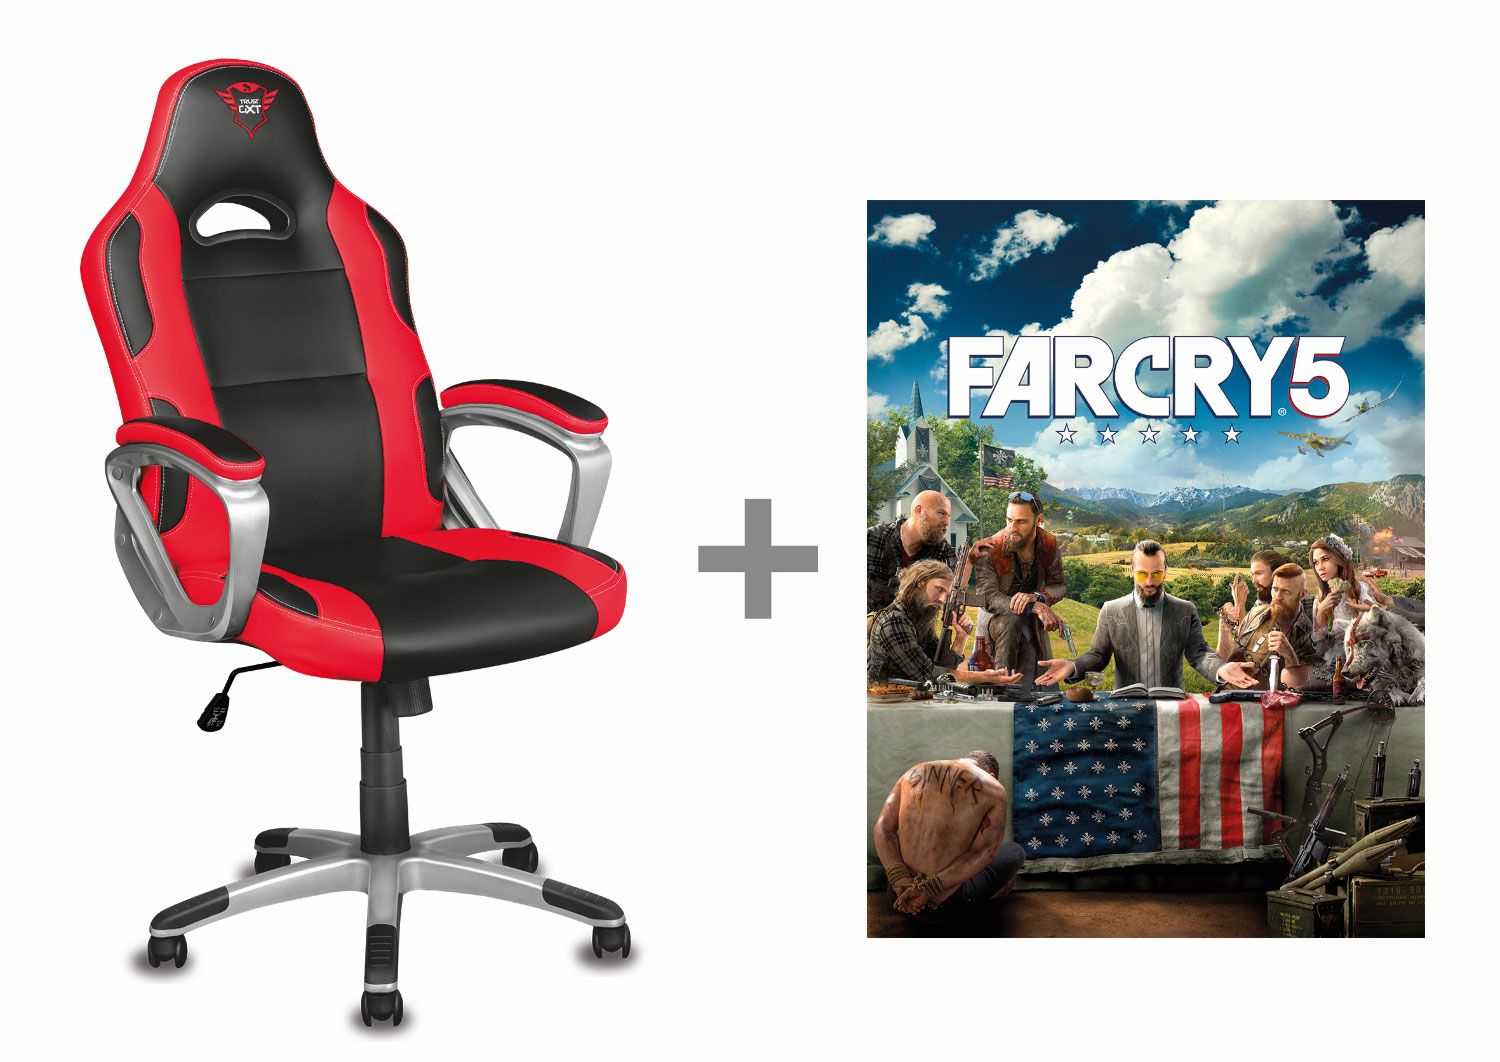 Soutěžte s Trust o hráčský balíček s Far Cry 5 a o další ceny